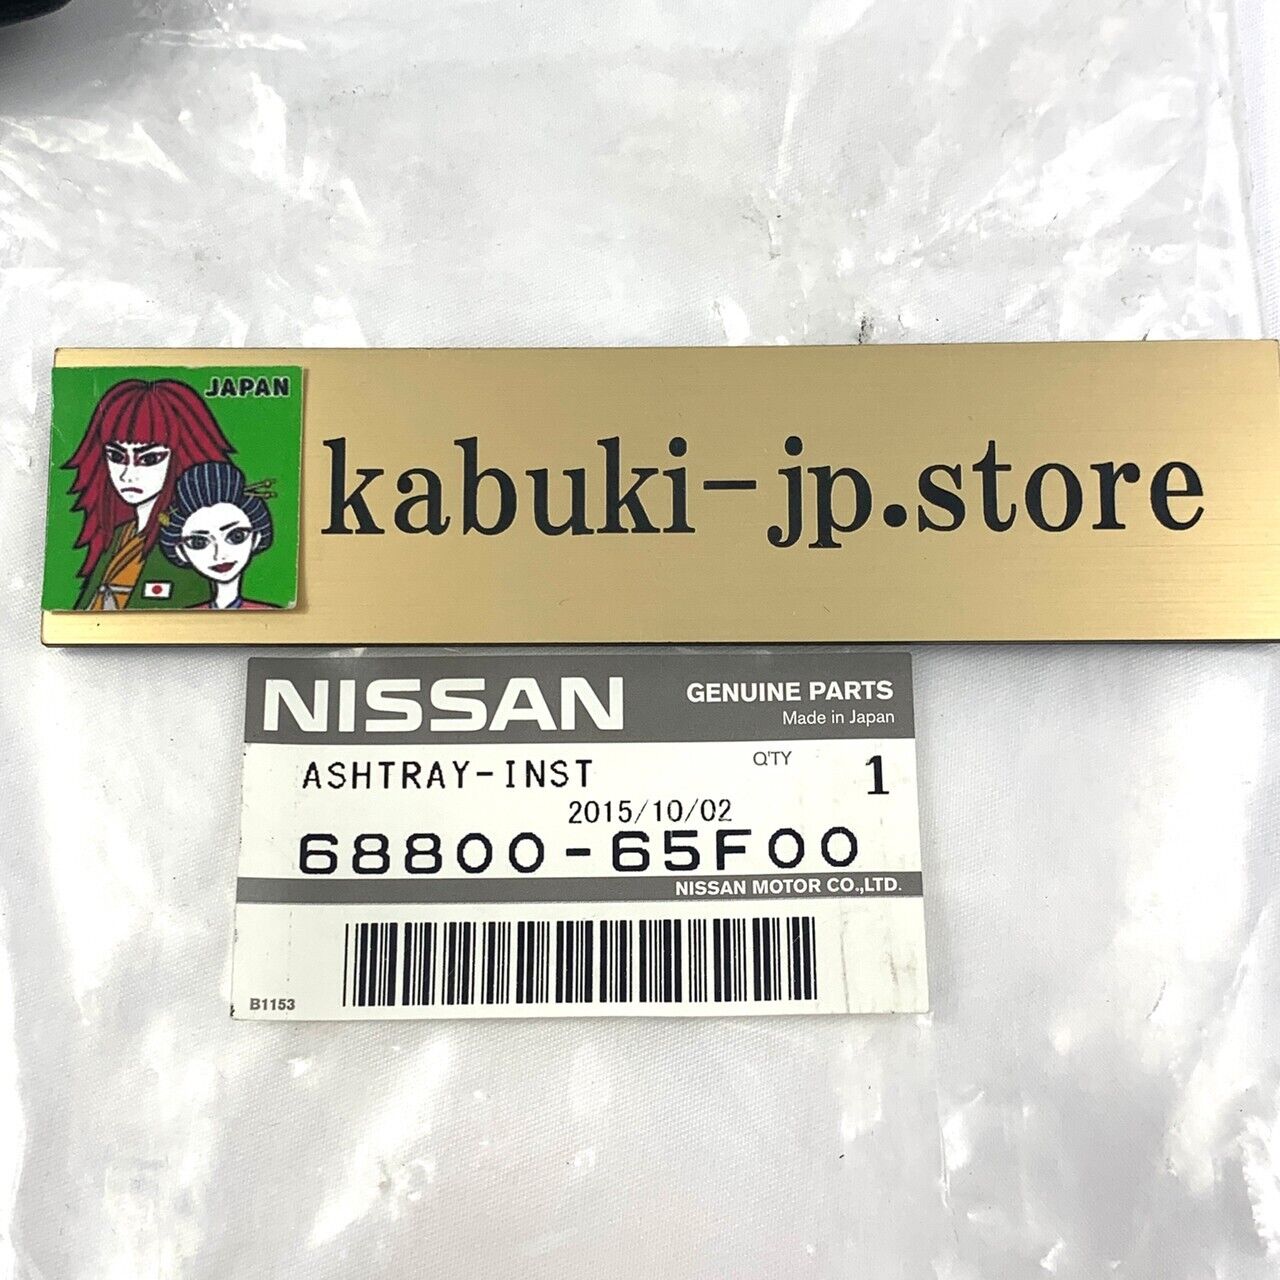 Nissan Genuine 68800-65F00 240SX Silvia S14 Center Console Ash Tray Black